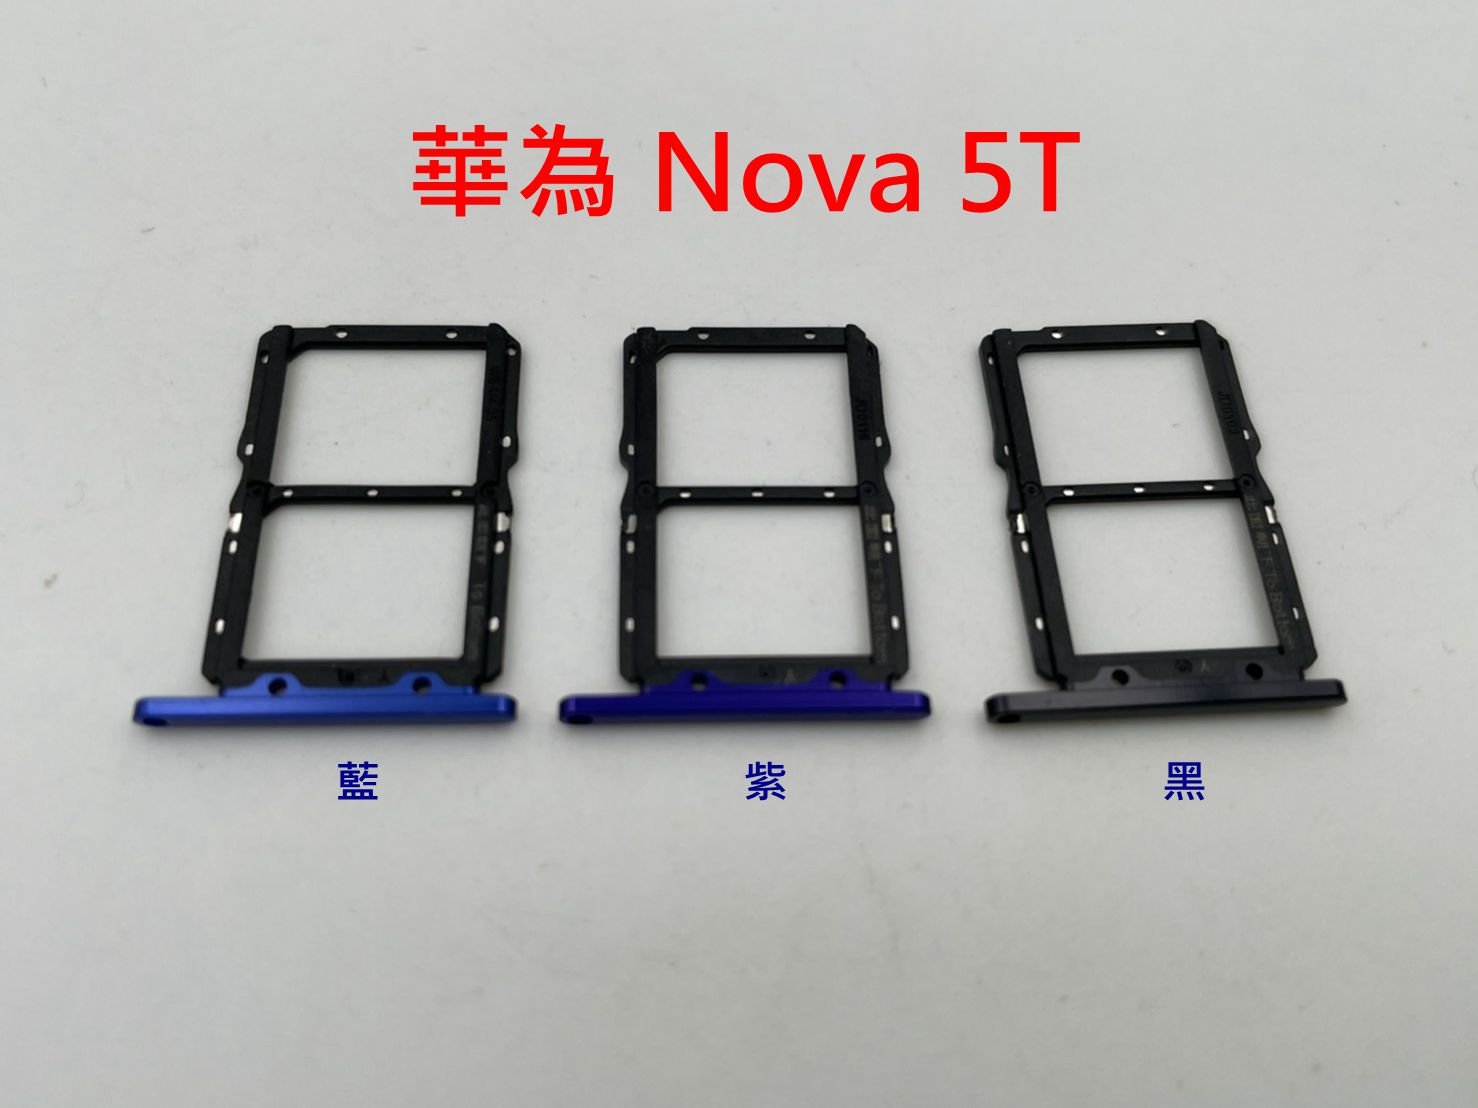 HUAWEI Nova 5T 華為 Nova5T卡托 卡槽 卡架 SIM卡座 記憶卡槽